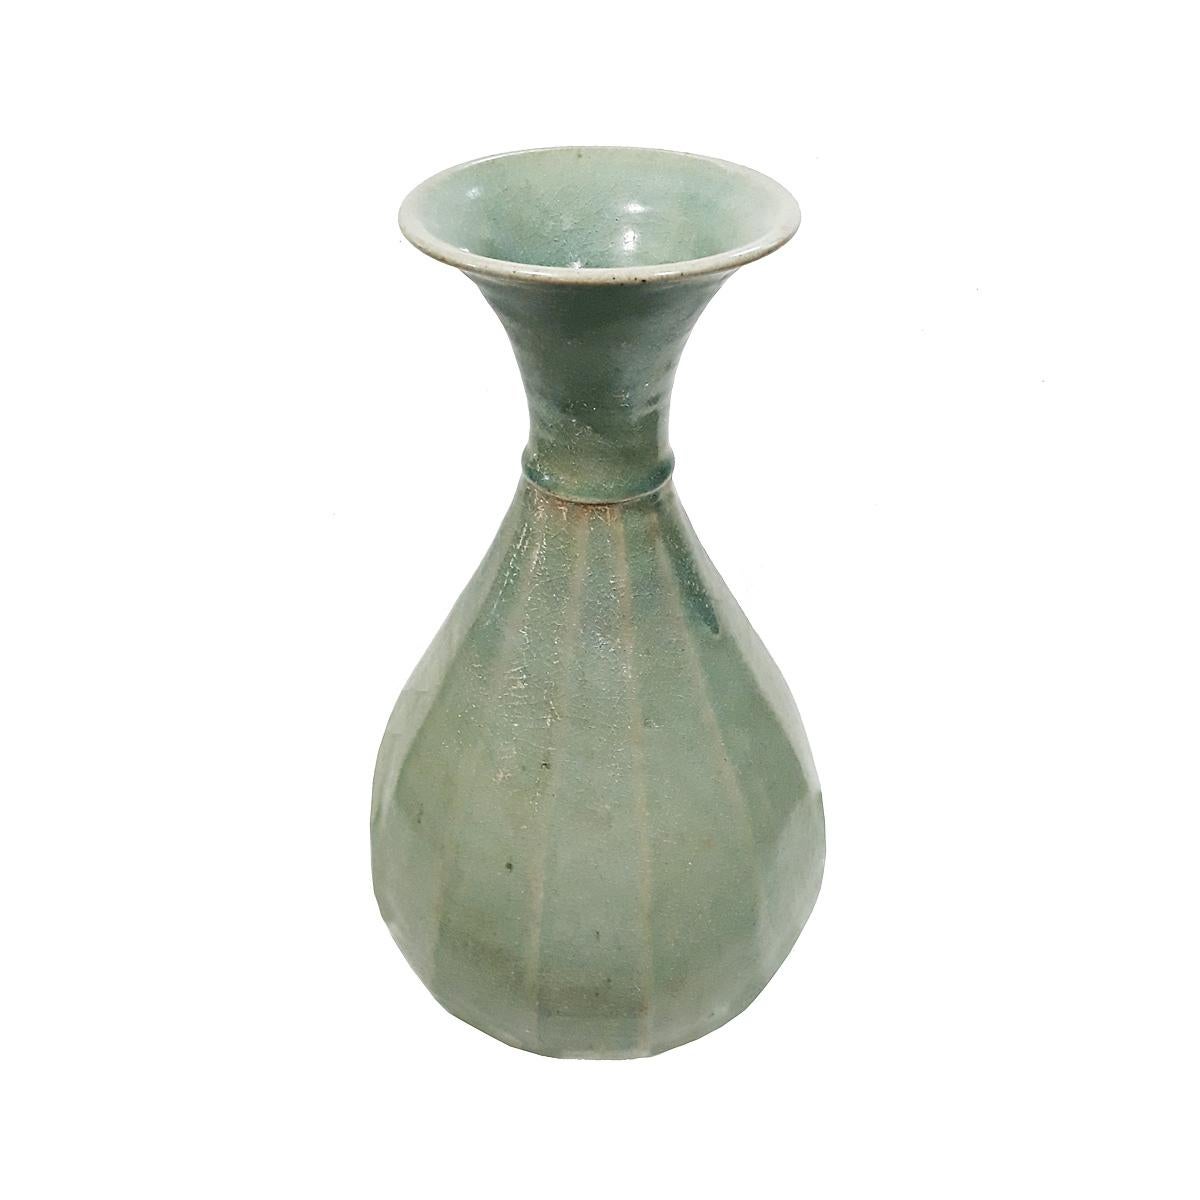 Handgefertigte Keramikvase aus Thailand, Mitte des 20. Jahrhunderts. Gerippte Form, verjüngter Hals, klassische Celadon-grüne Craquelé-Oberfläche.